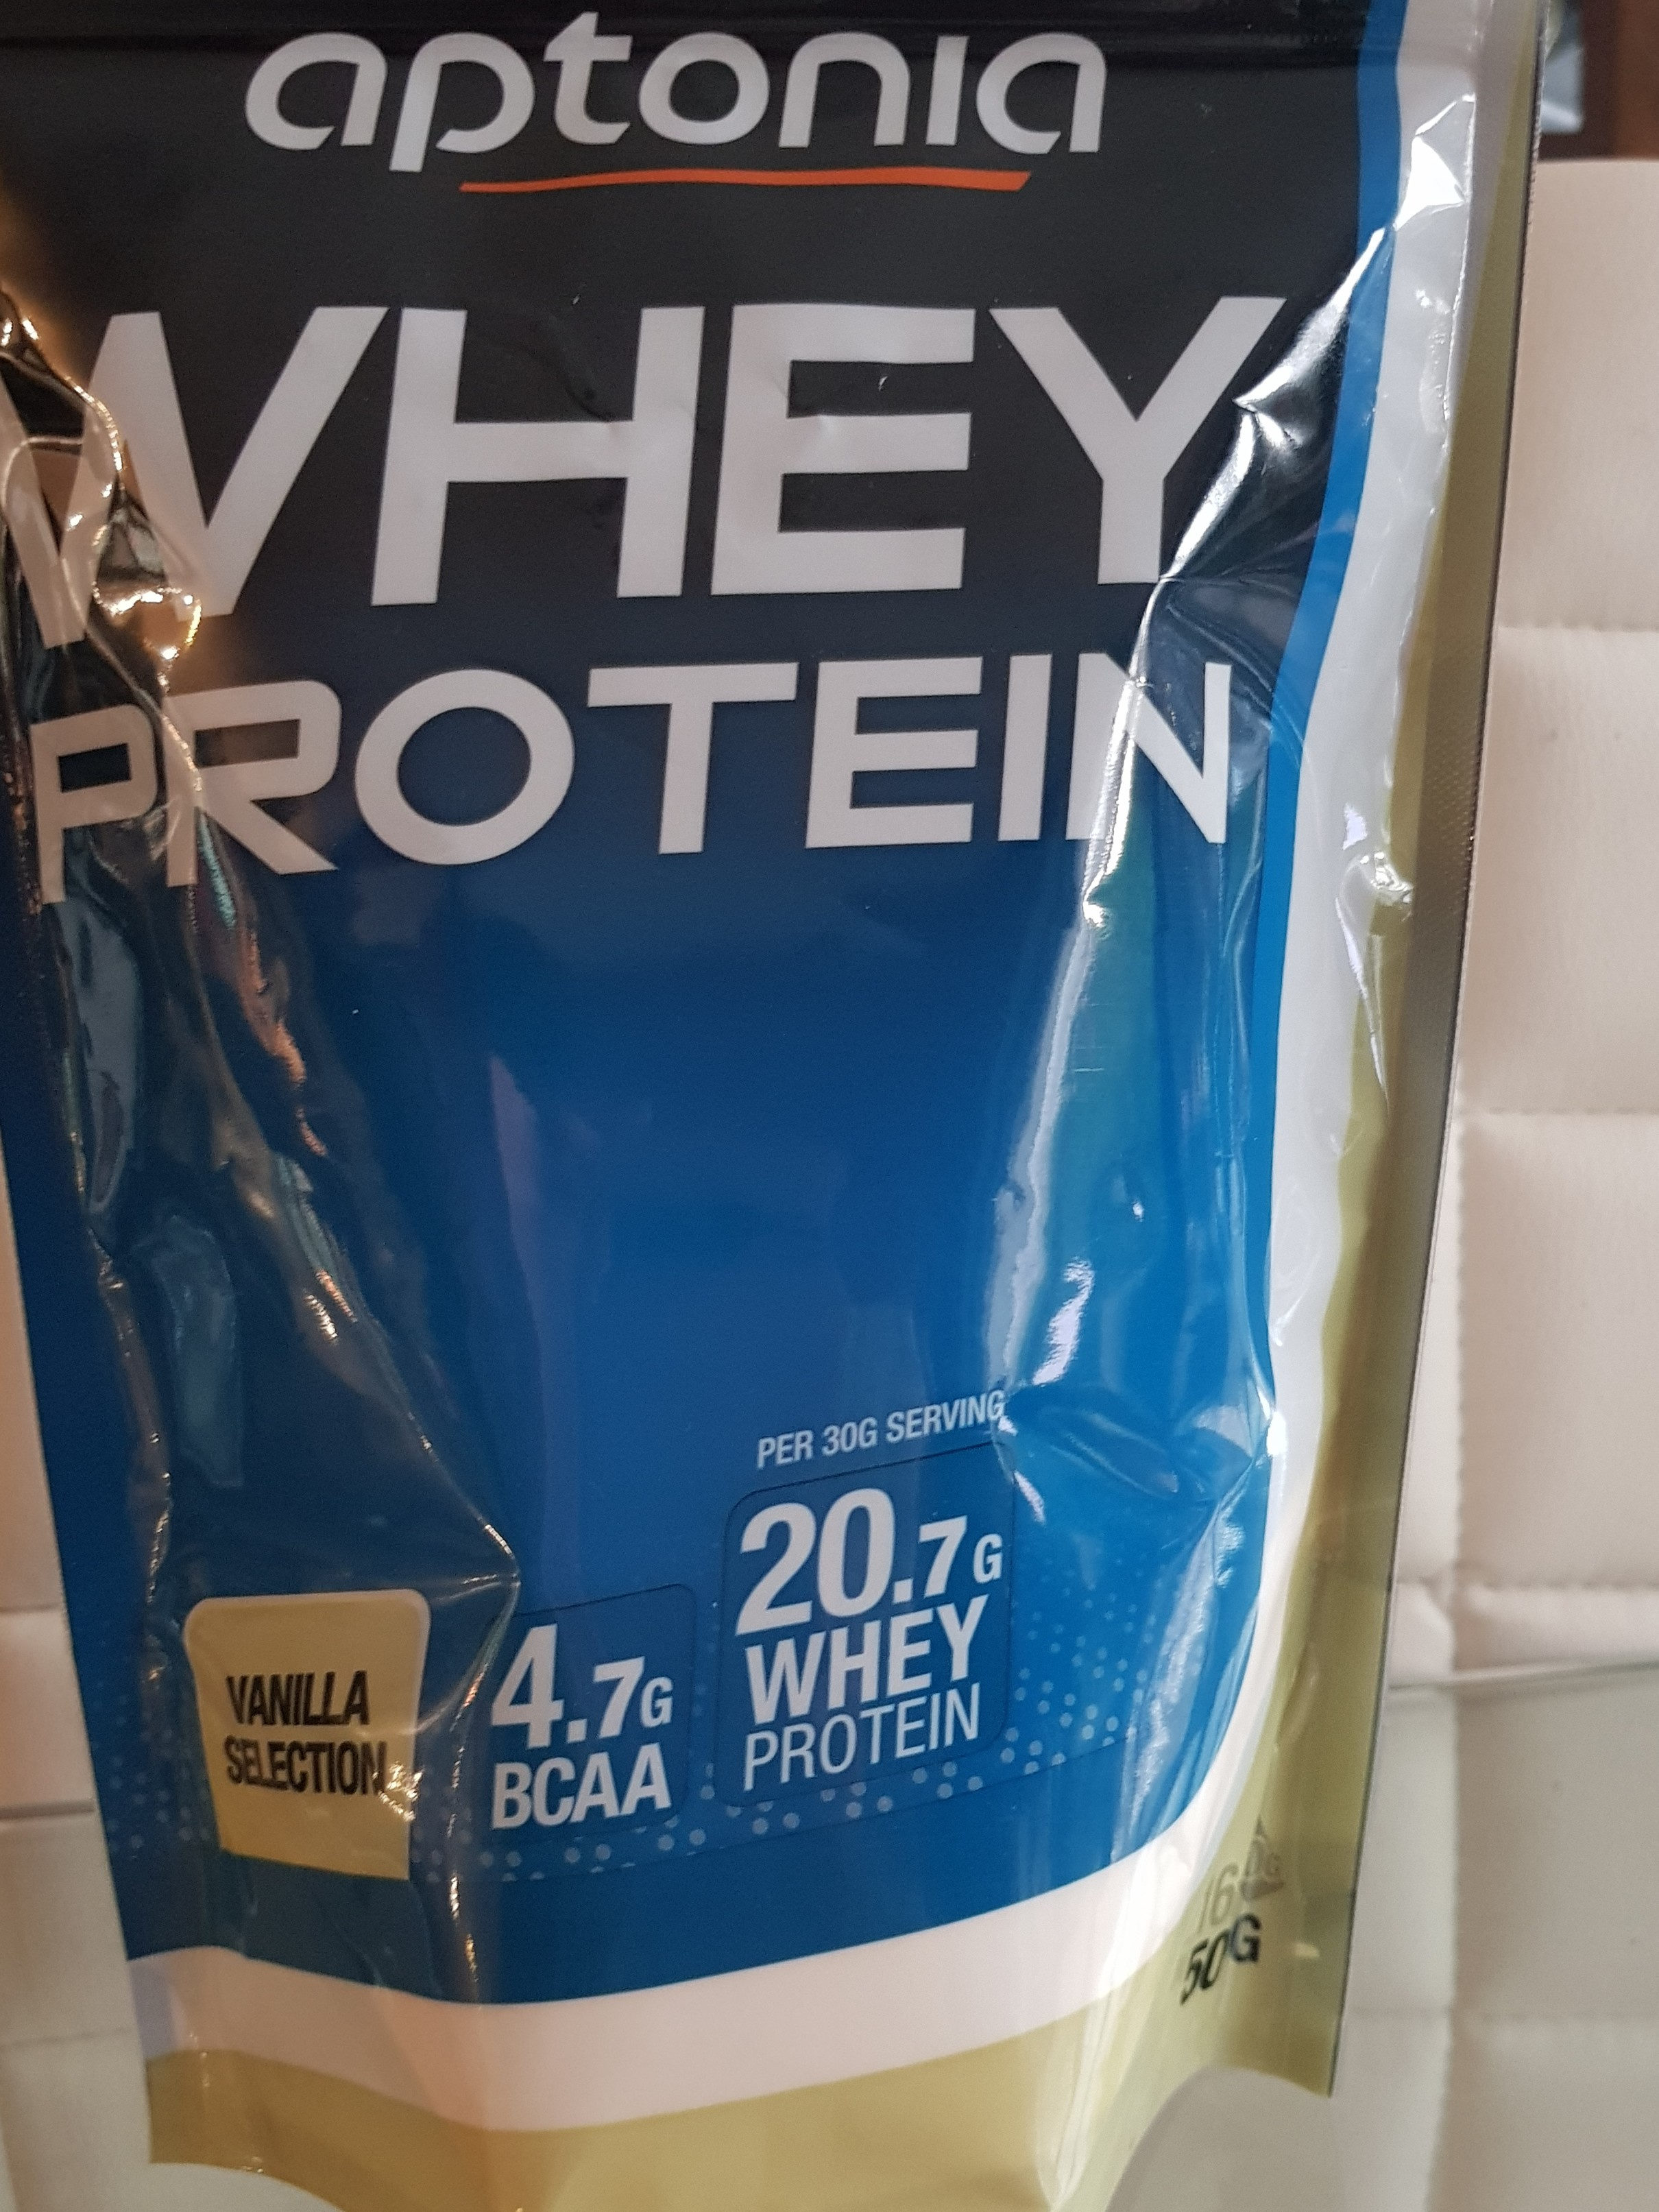 aptonia whey protein vanilla